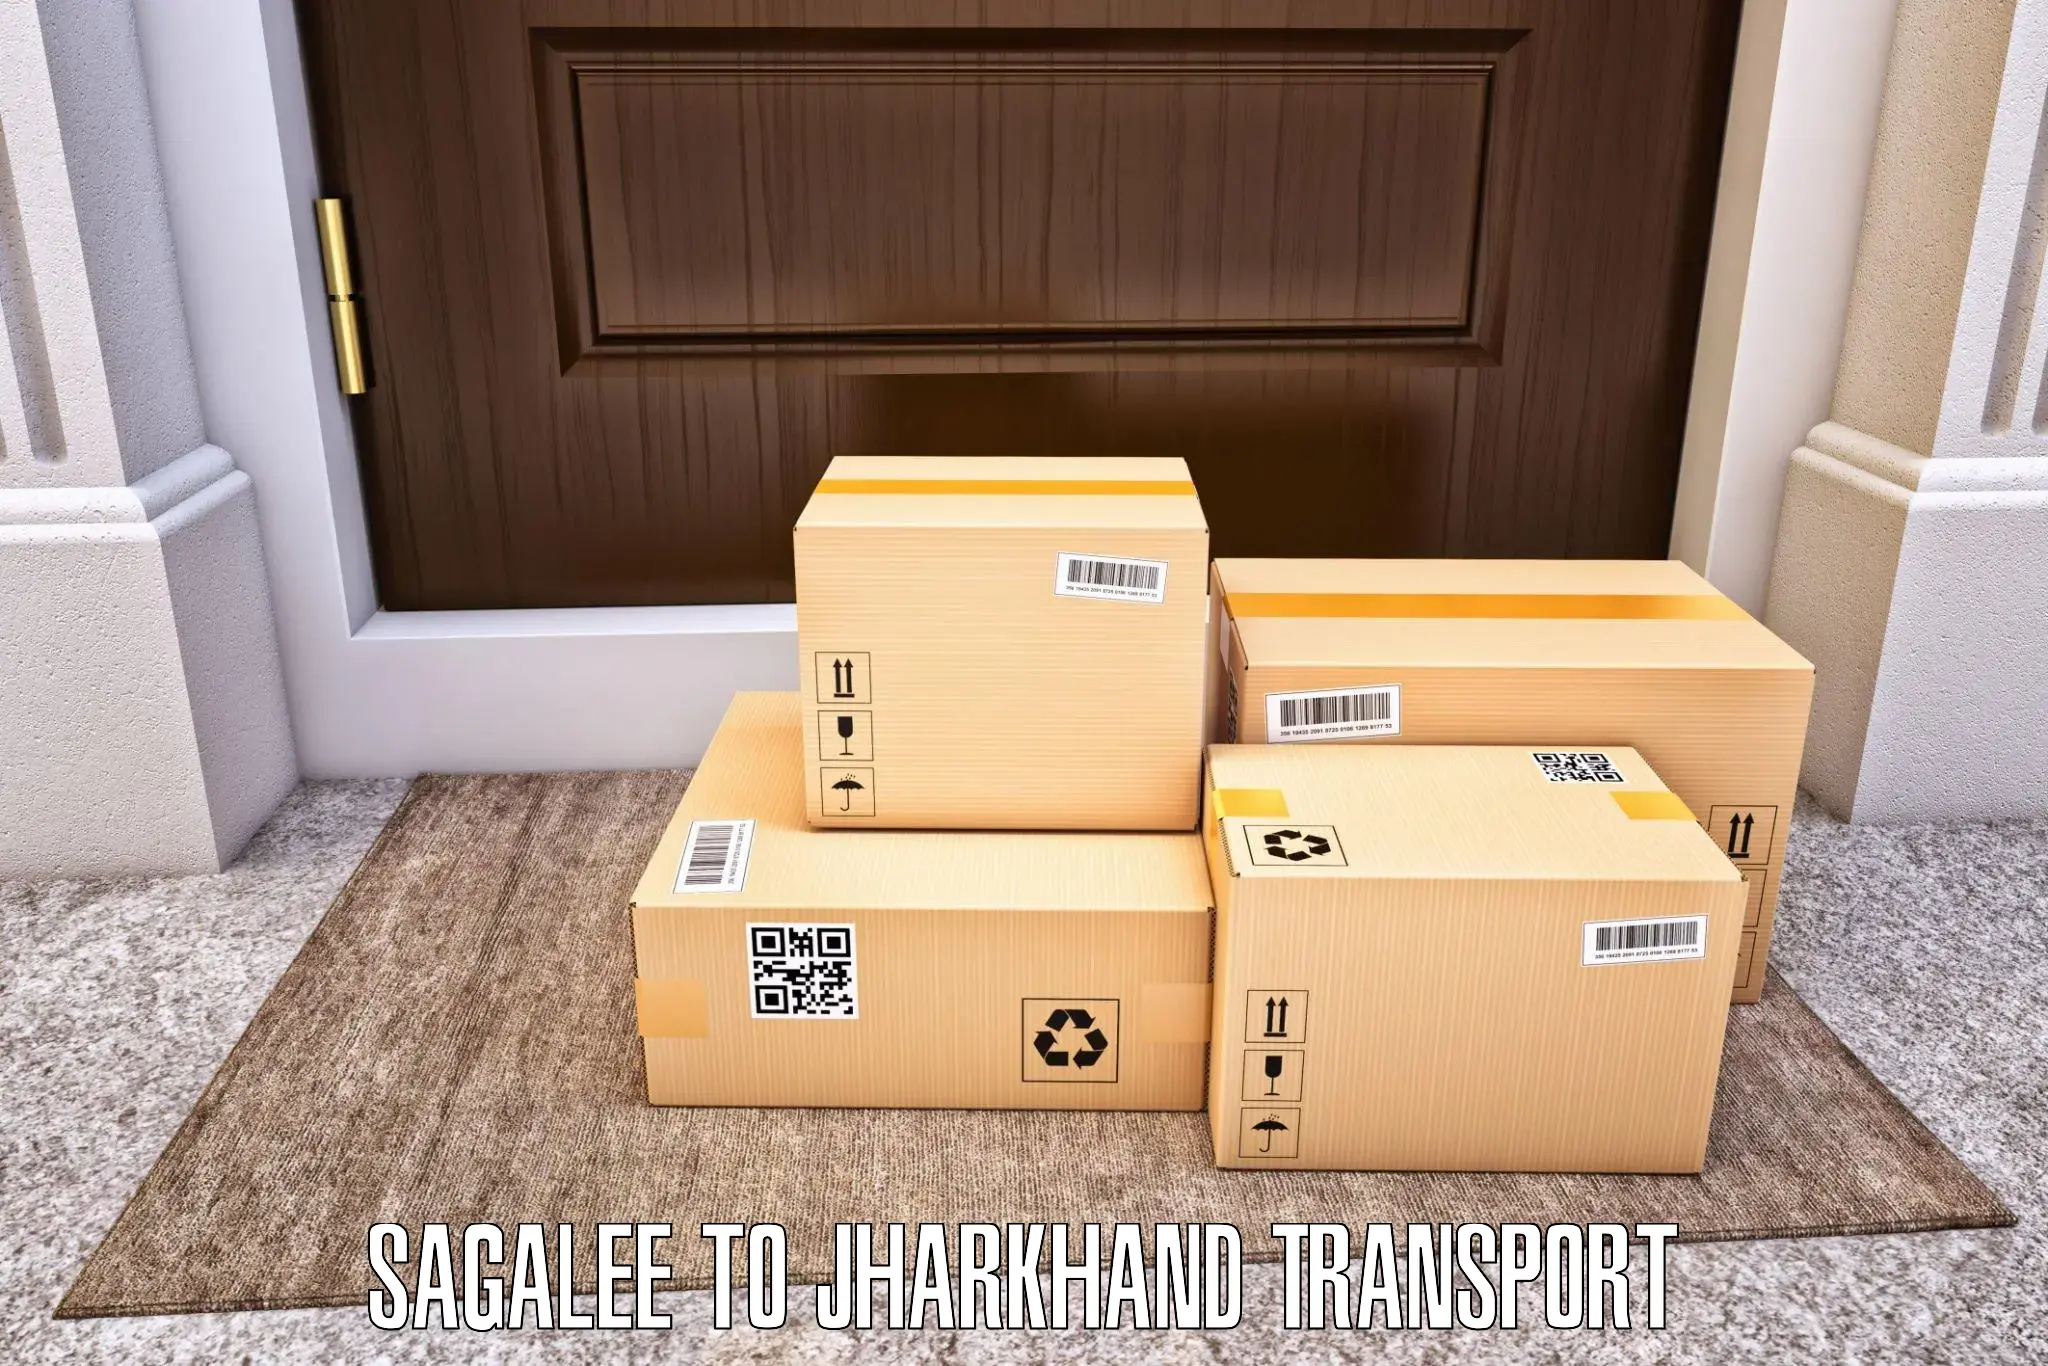 Furniture transport service Sagalee to Garhwa